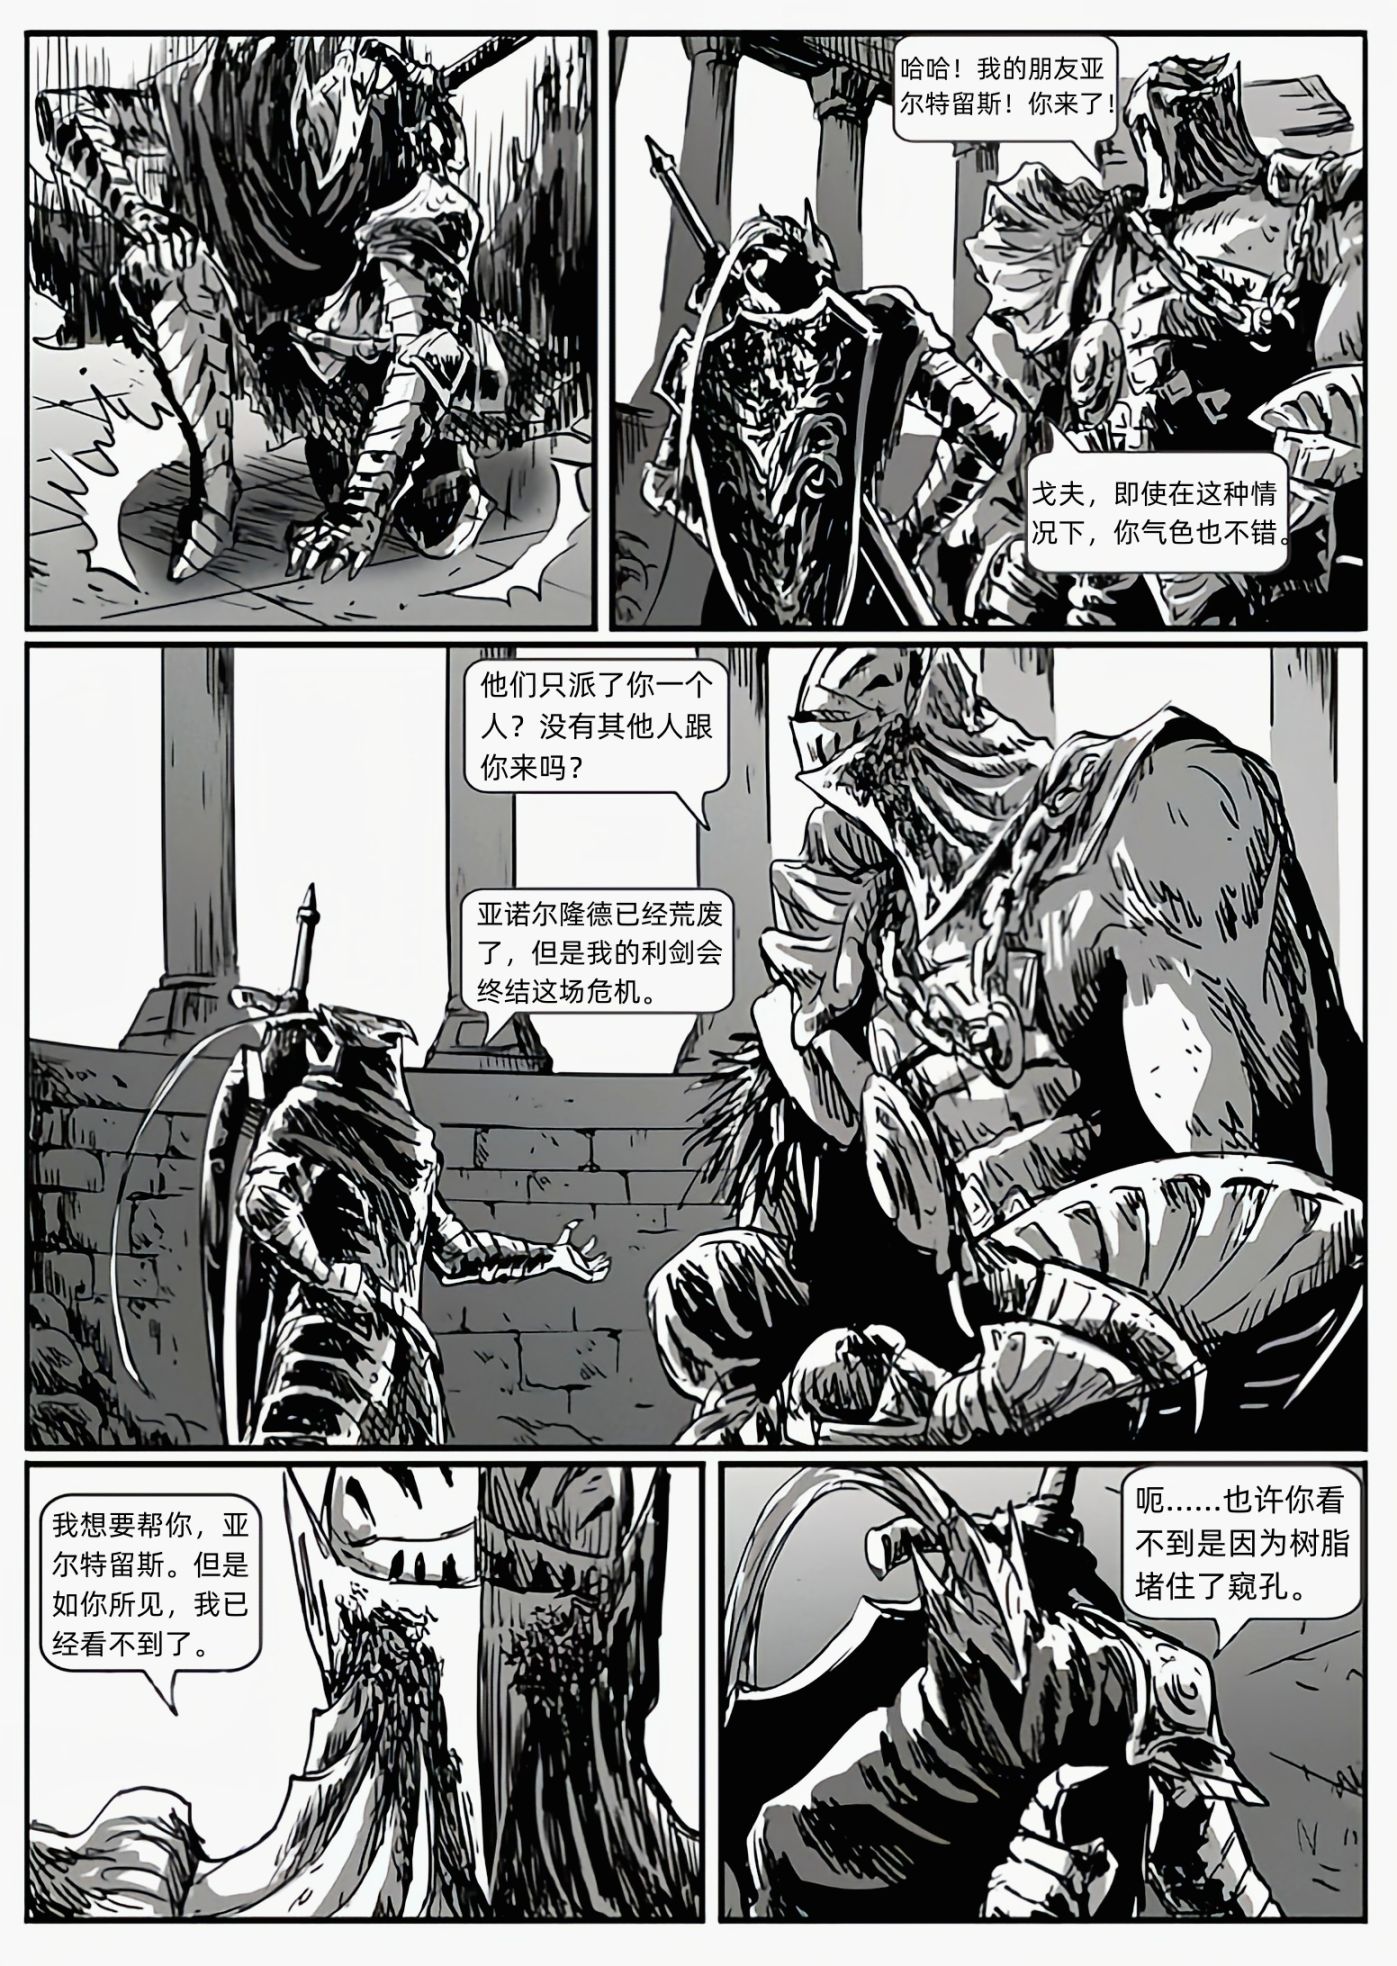 【漫畫】深淵漫步者（chap8偉哉切斯特）-第10張